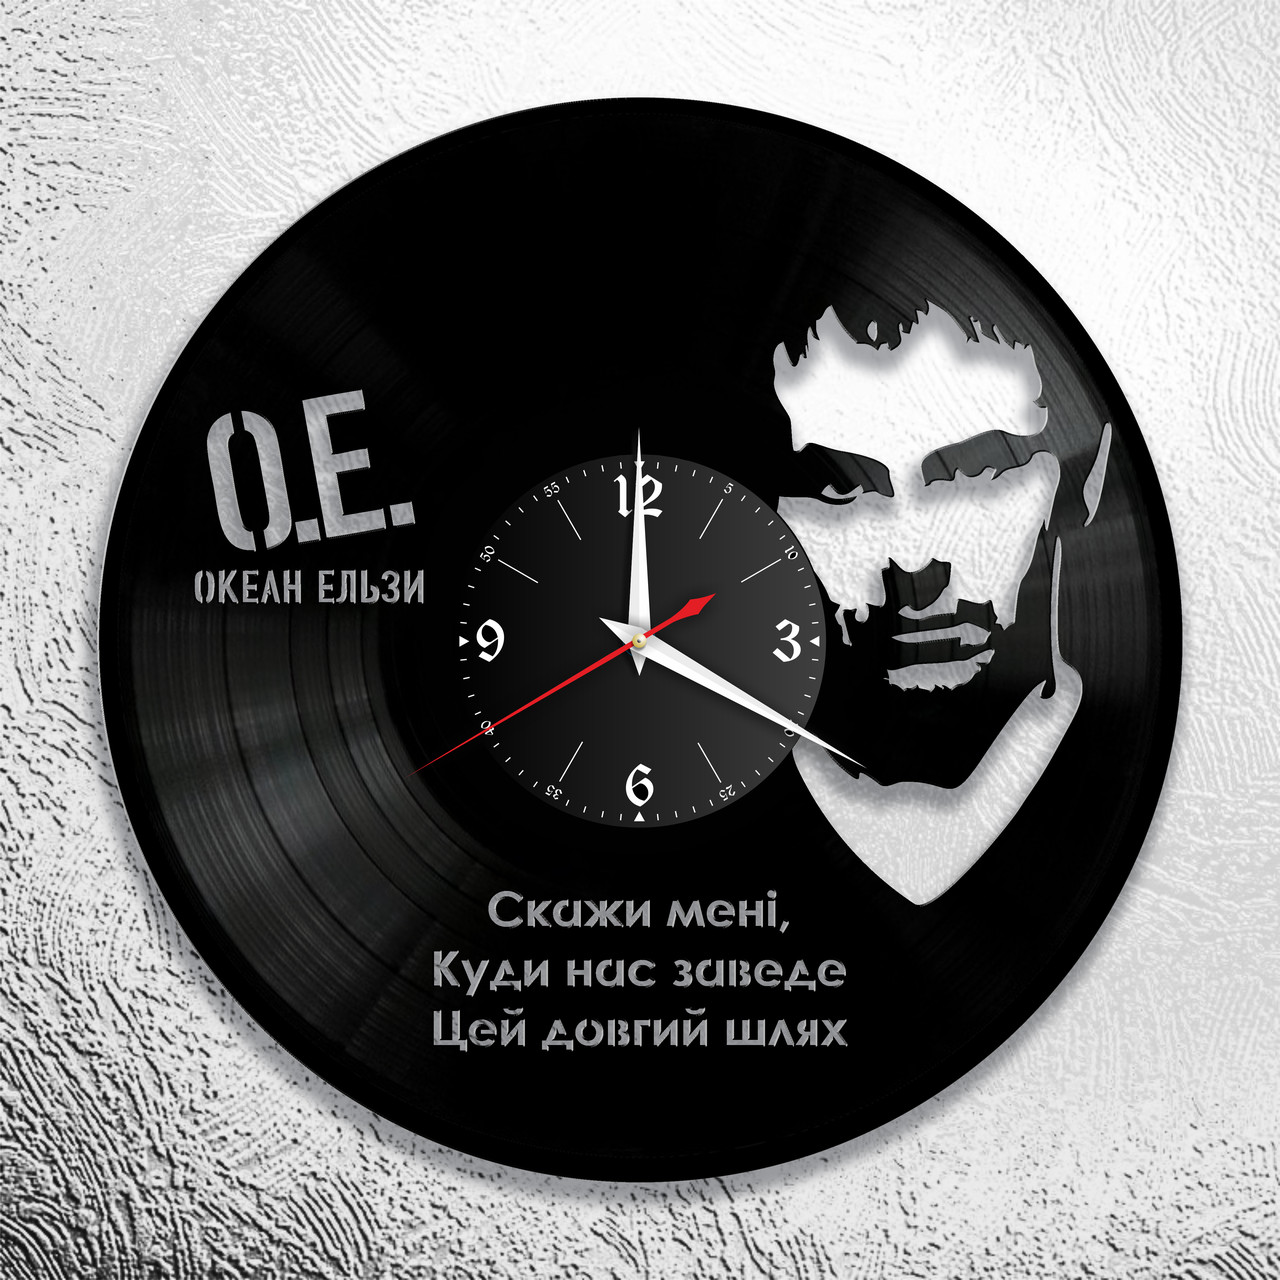 Часы из виниловой пластинки "Океан Эльзи" версия 1, фото 1